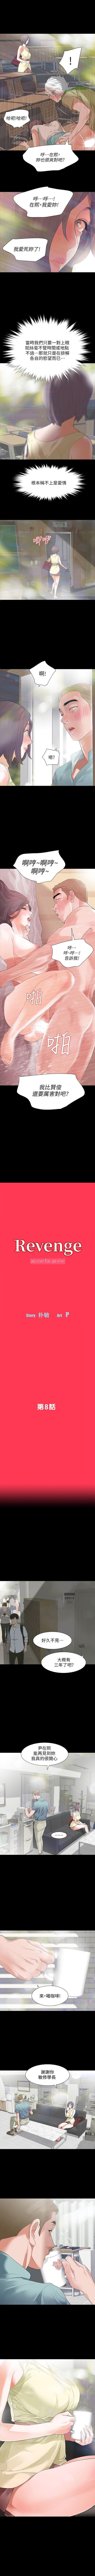 Revenge 1-25 38